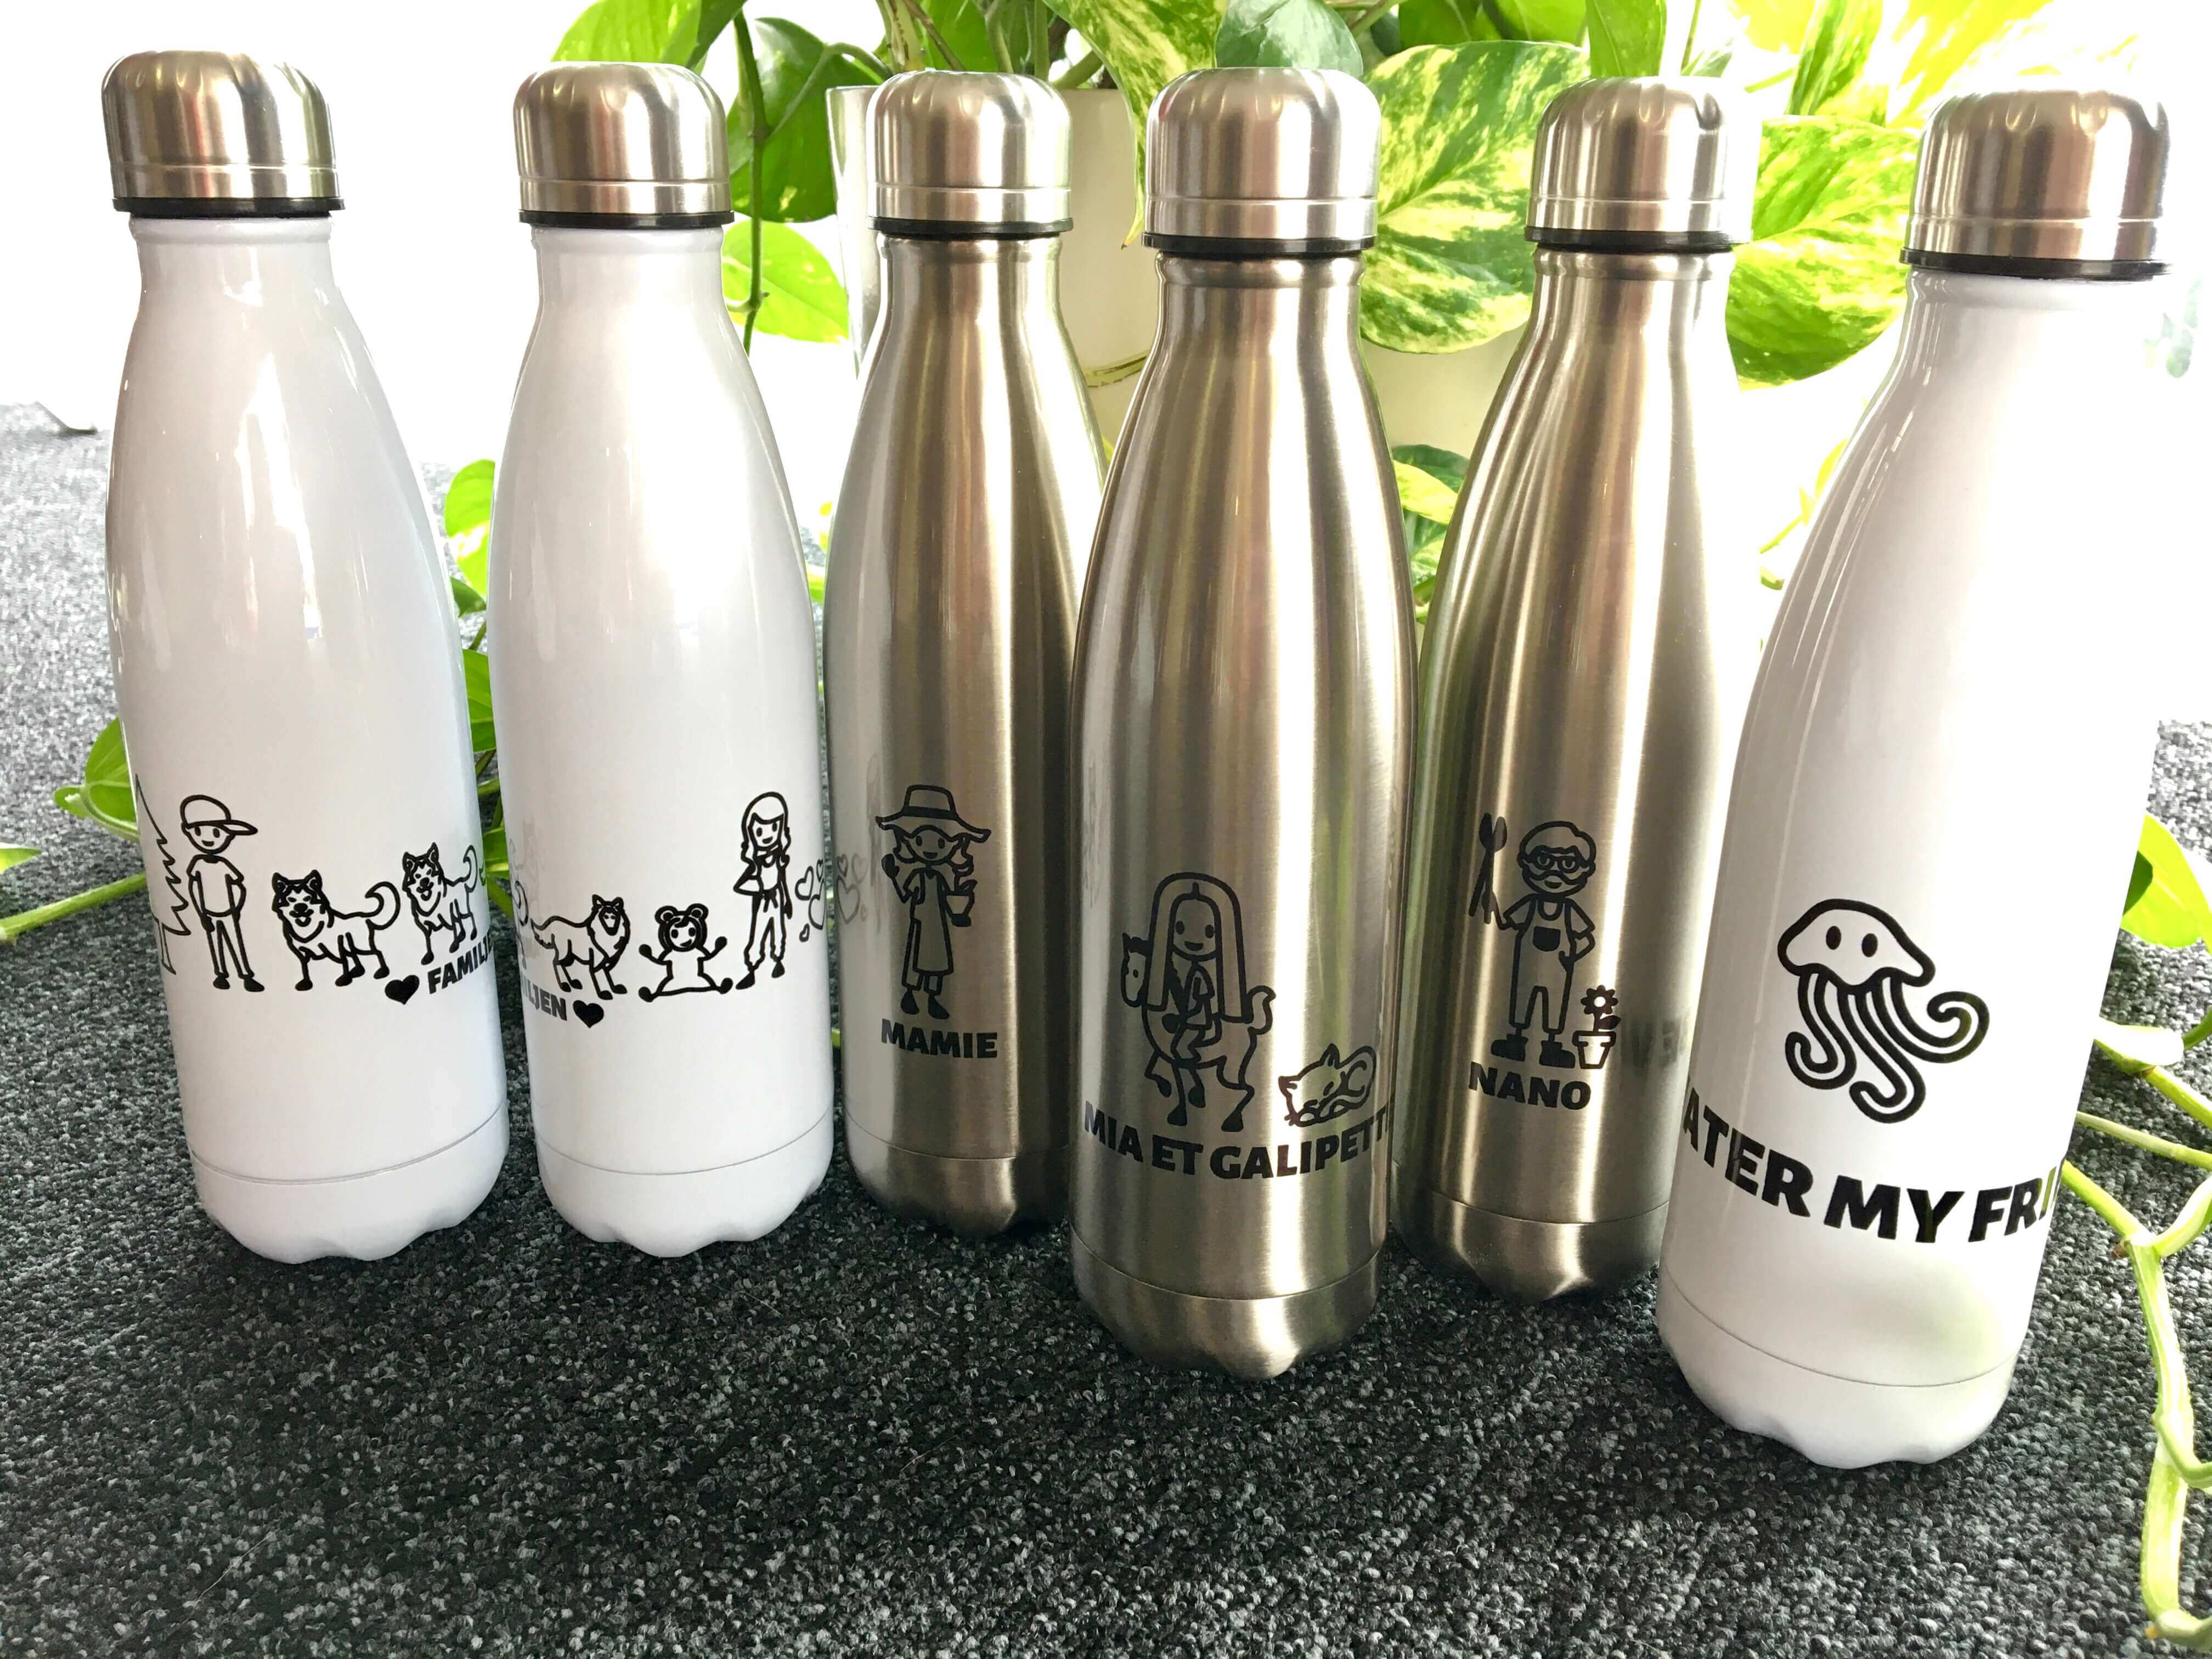 Botellas de acero inoxidable personalizadas de originalpeople con diferentes diseños 